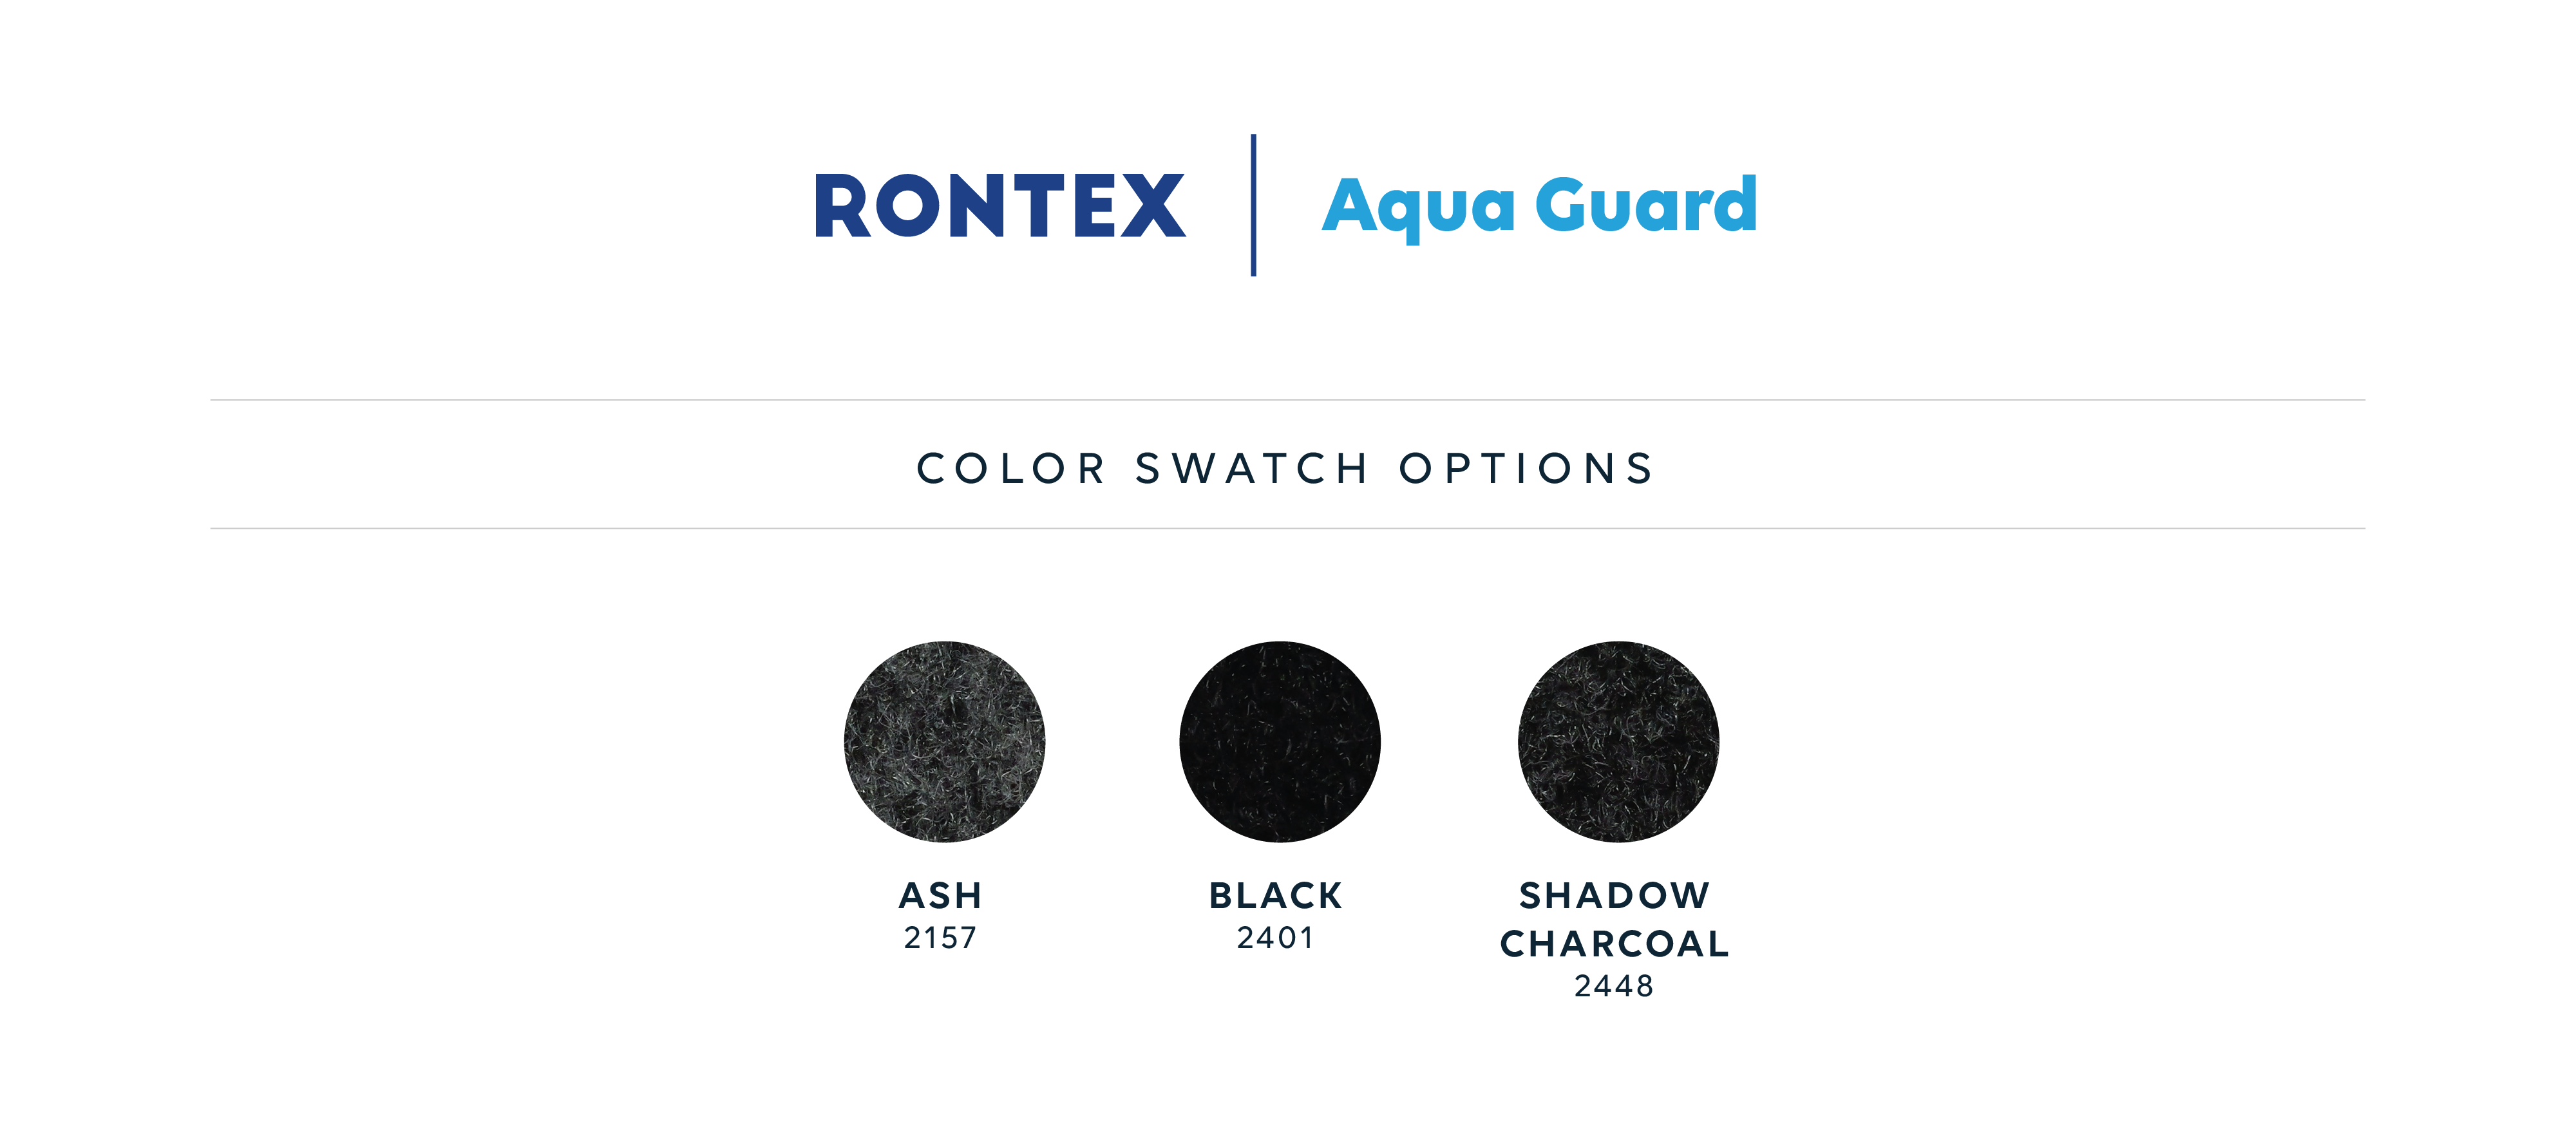 Rontex image swatches aqua guard